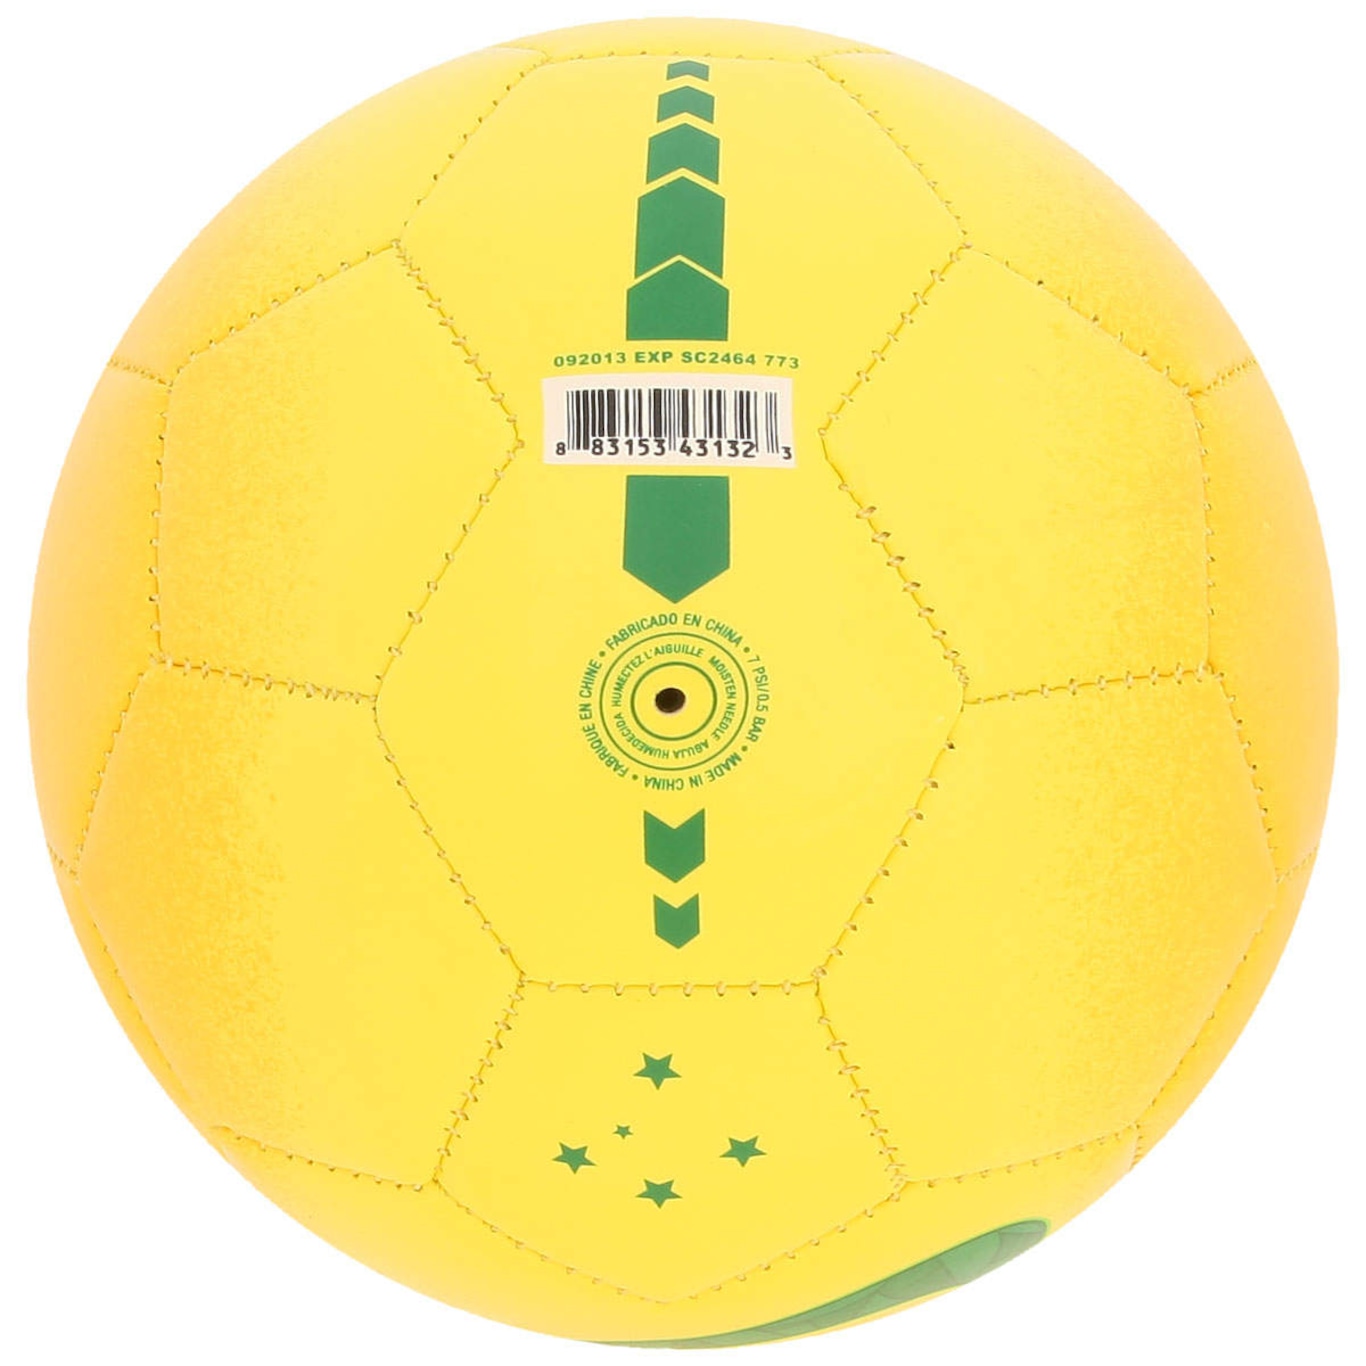 MiniBola de Futebol Nike Premier League Skills SC3325-710 - Amarelo - Botas  Online Femininas, Masculinas e Infantis